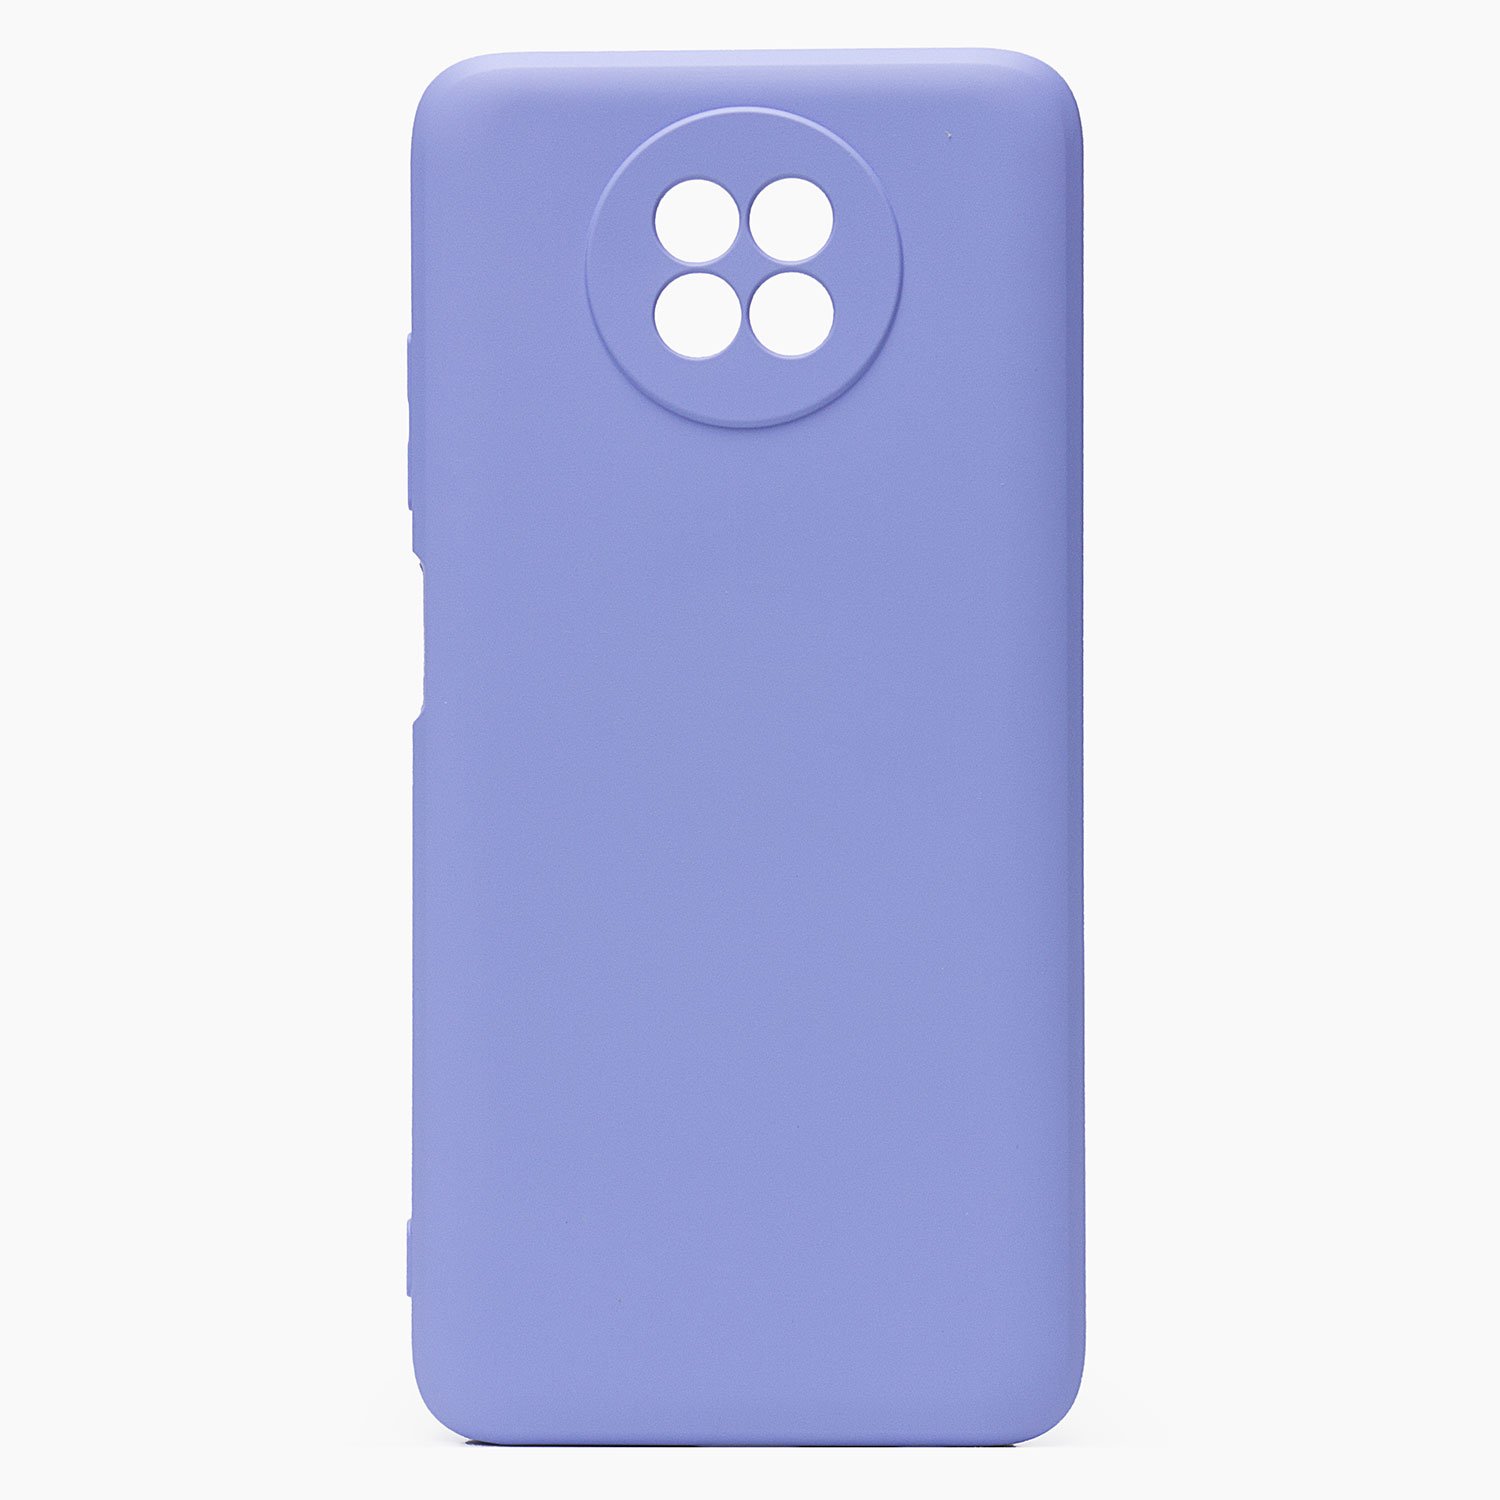 Чехол-накладка Activ Full Original Design для смартфона Xiaomi Redmi Note 9T, силикон, светло-фиолетовый